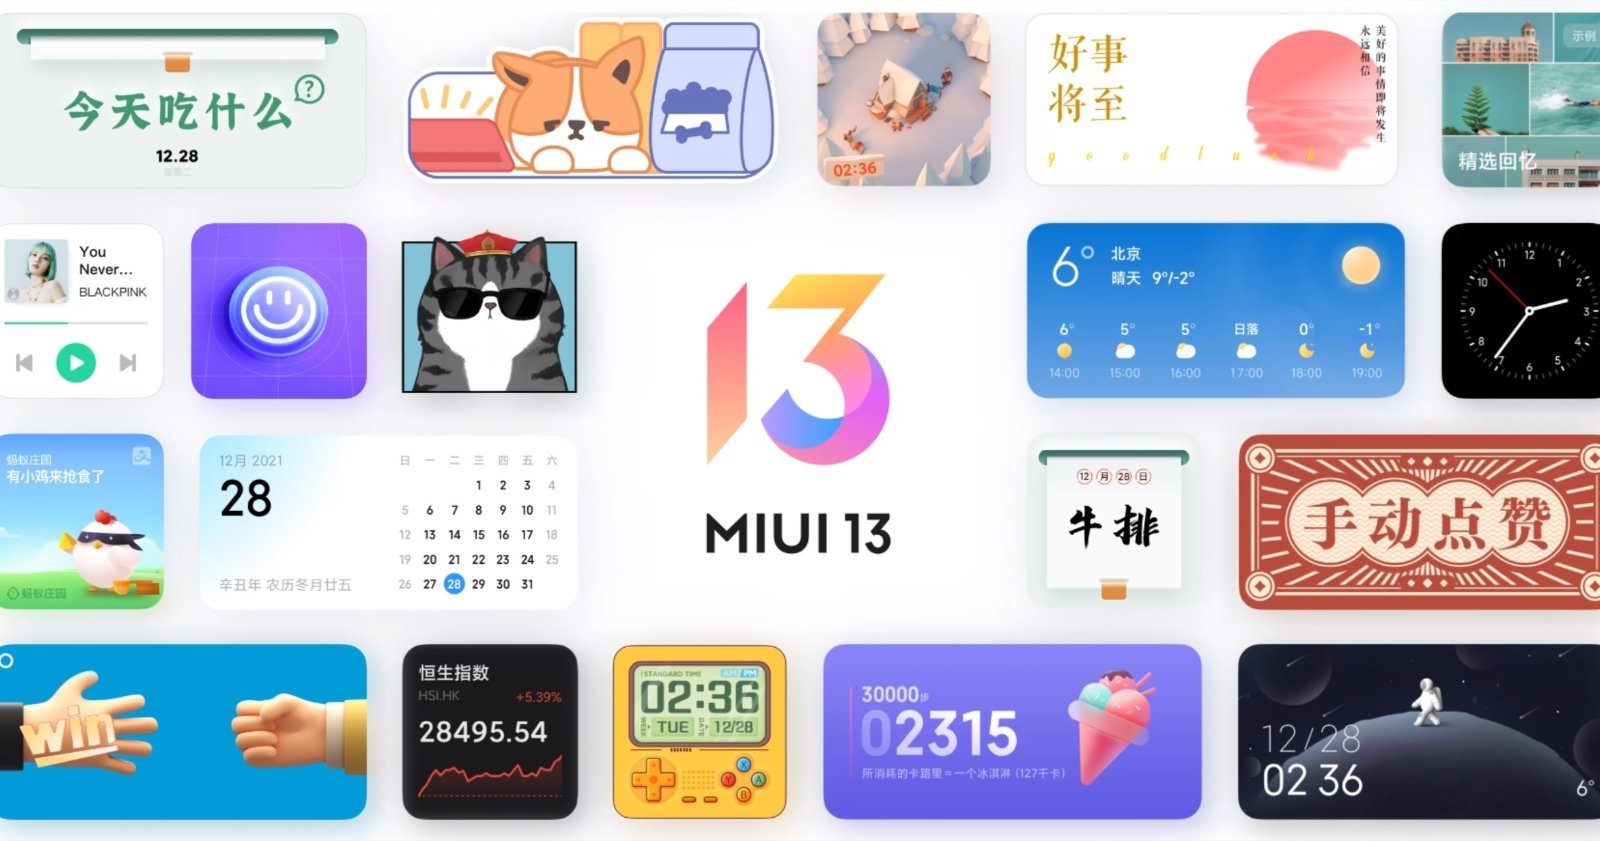 MIUI 13 es la nueva versión del sistema operativo de Xiaomi.